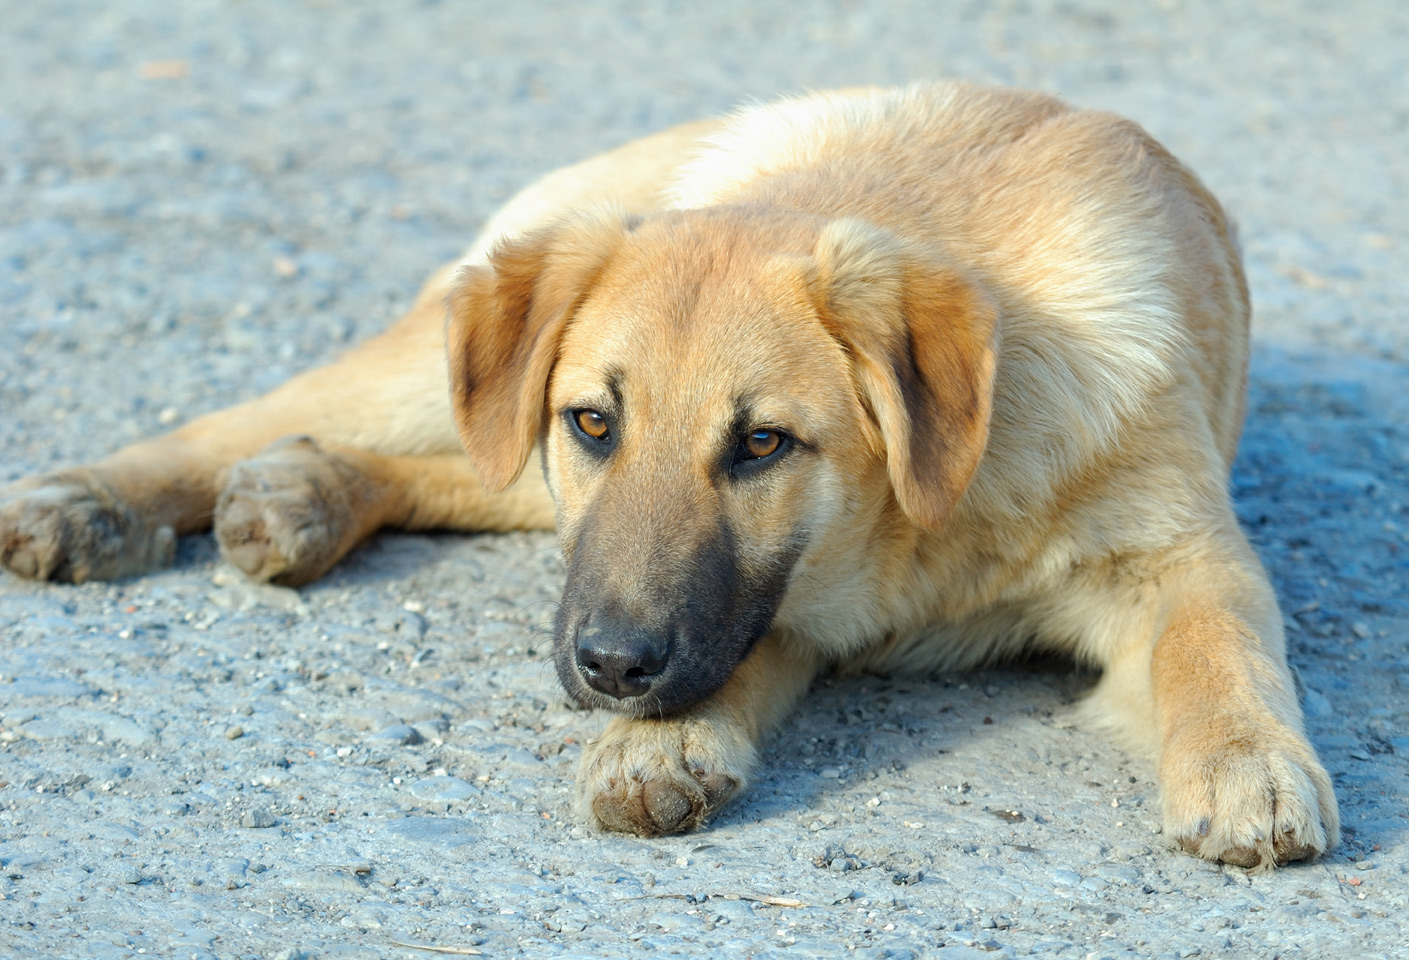 Σταμάτησαν νόμιμες εθελοντικές στειρώσεις οι κτηνίατροι στη Σητεία